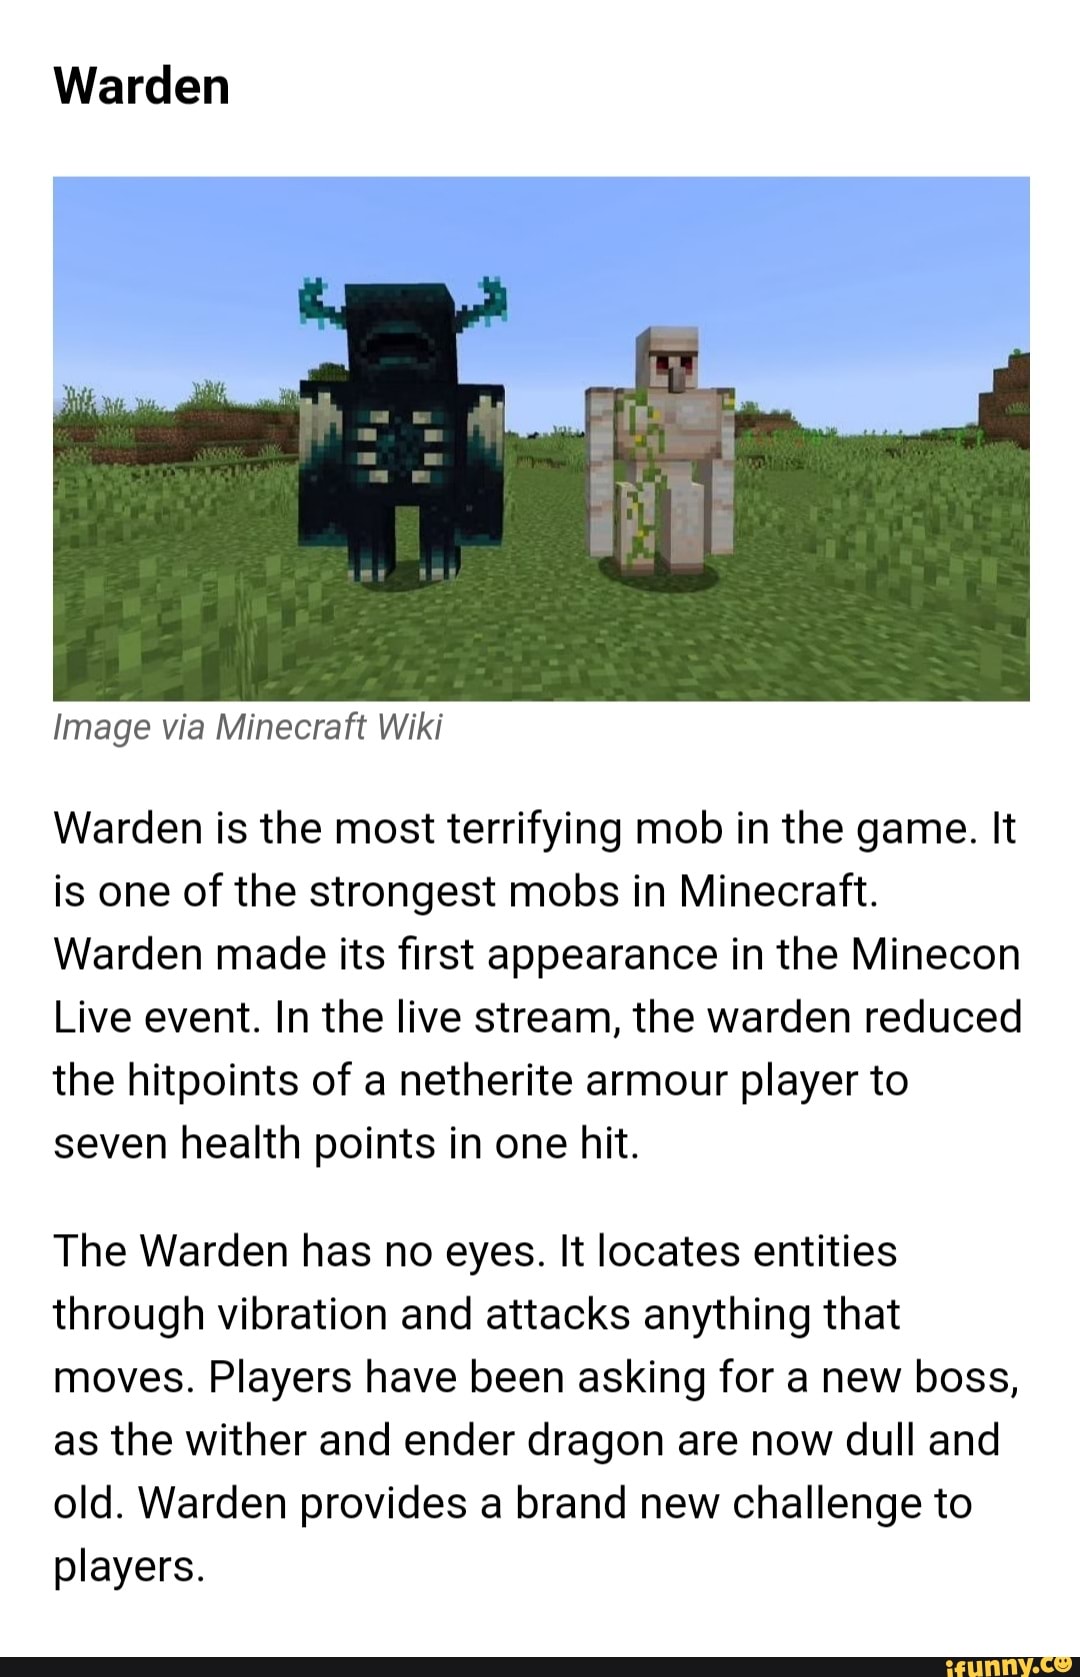 Ender Dragon – Minecraft Wiki